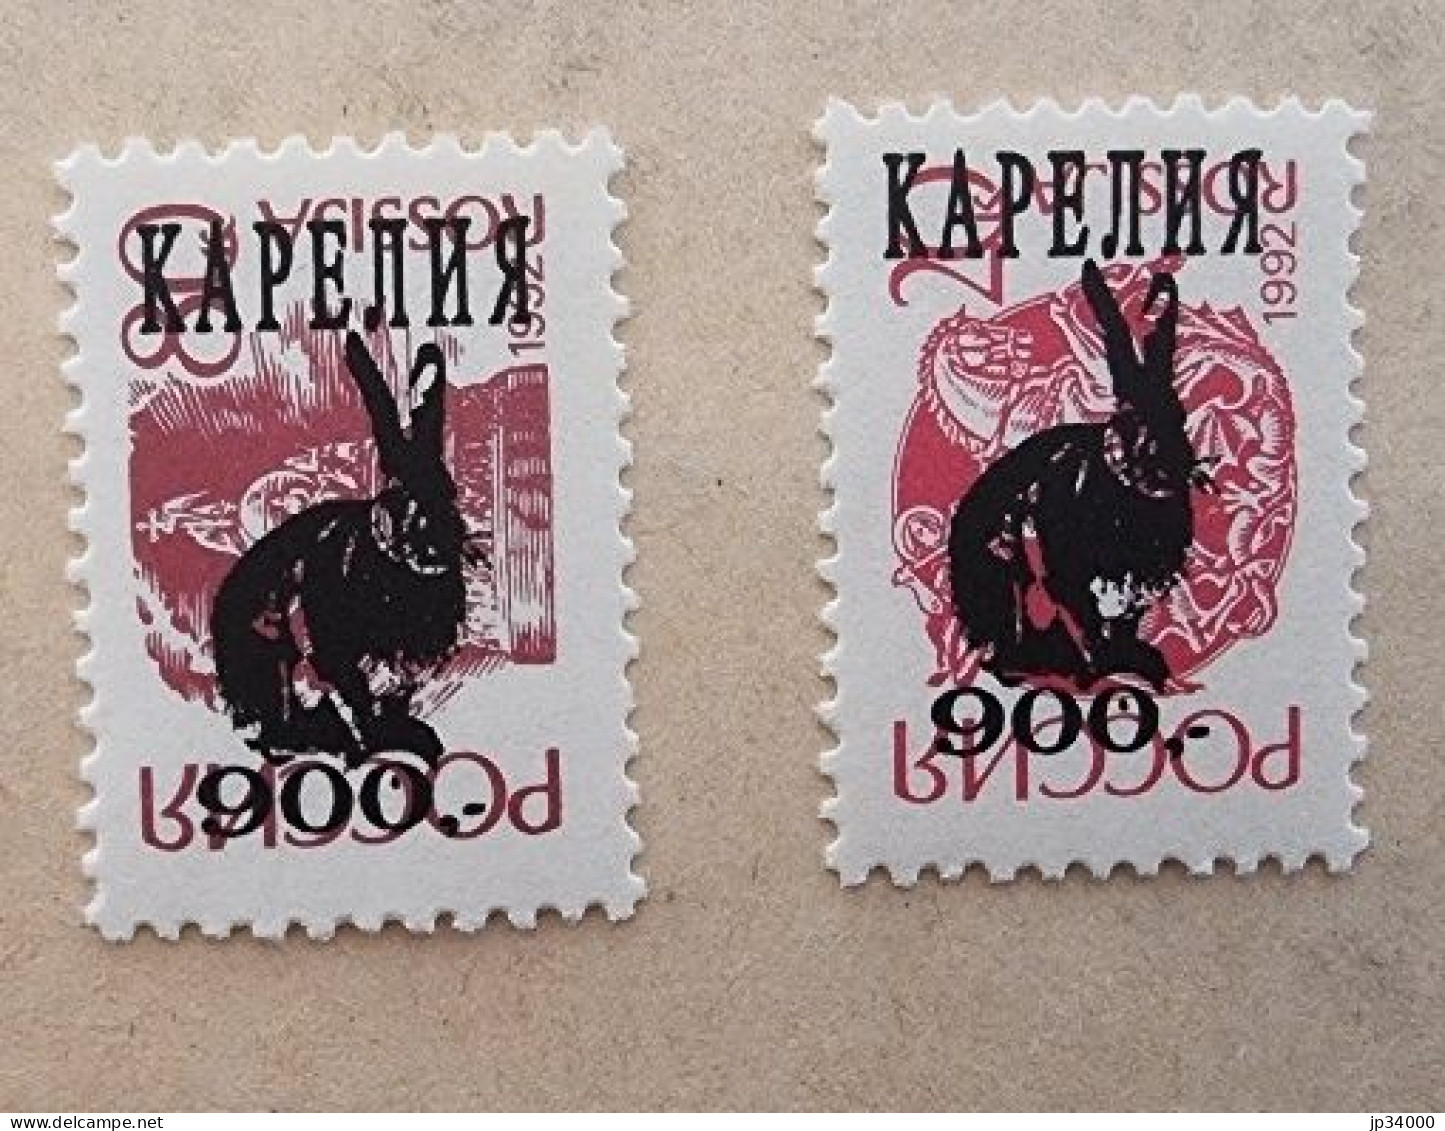 RUSSIE Lapins, Lapin, Rabbit, Conejo. 2 Valeurs Dentelées (1992) ** Neuf Sans Charnière - Lapins